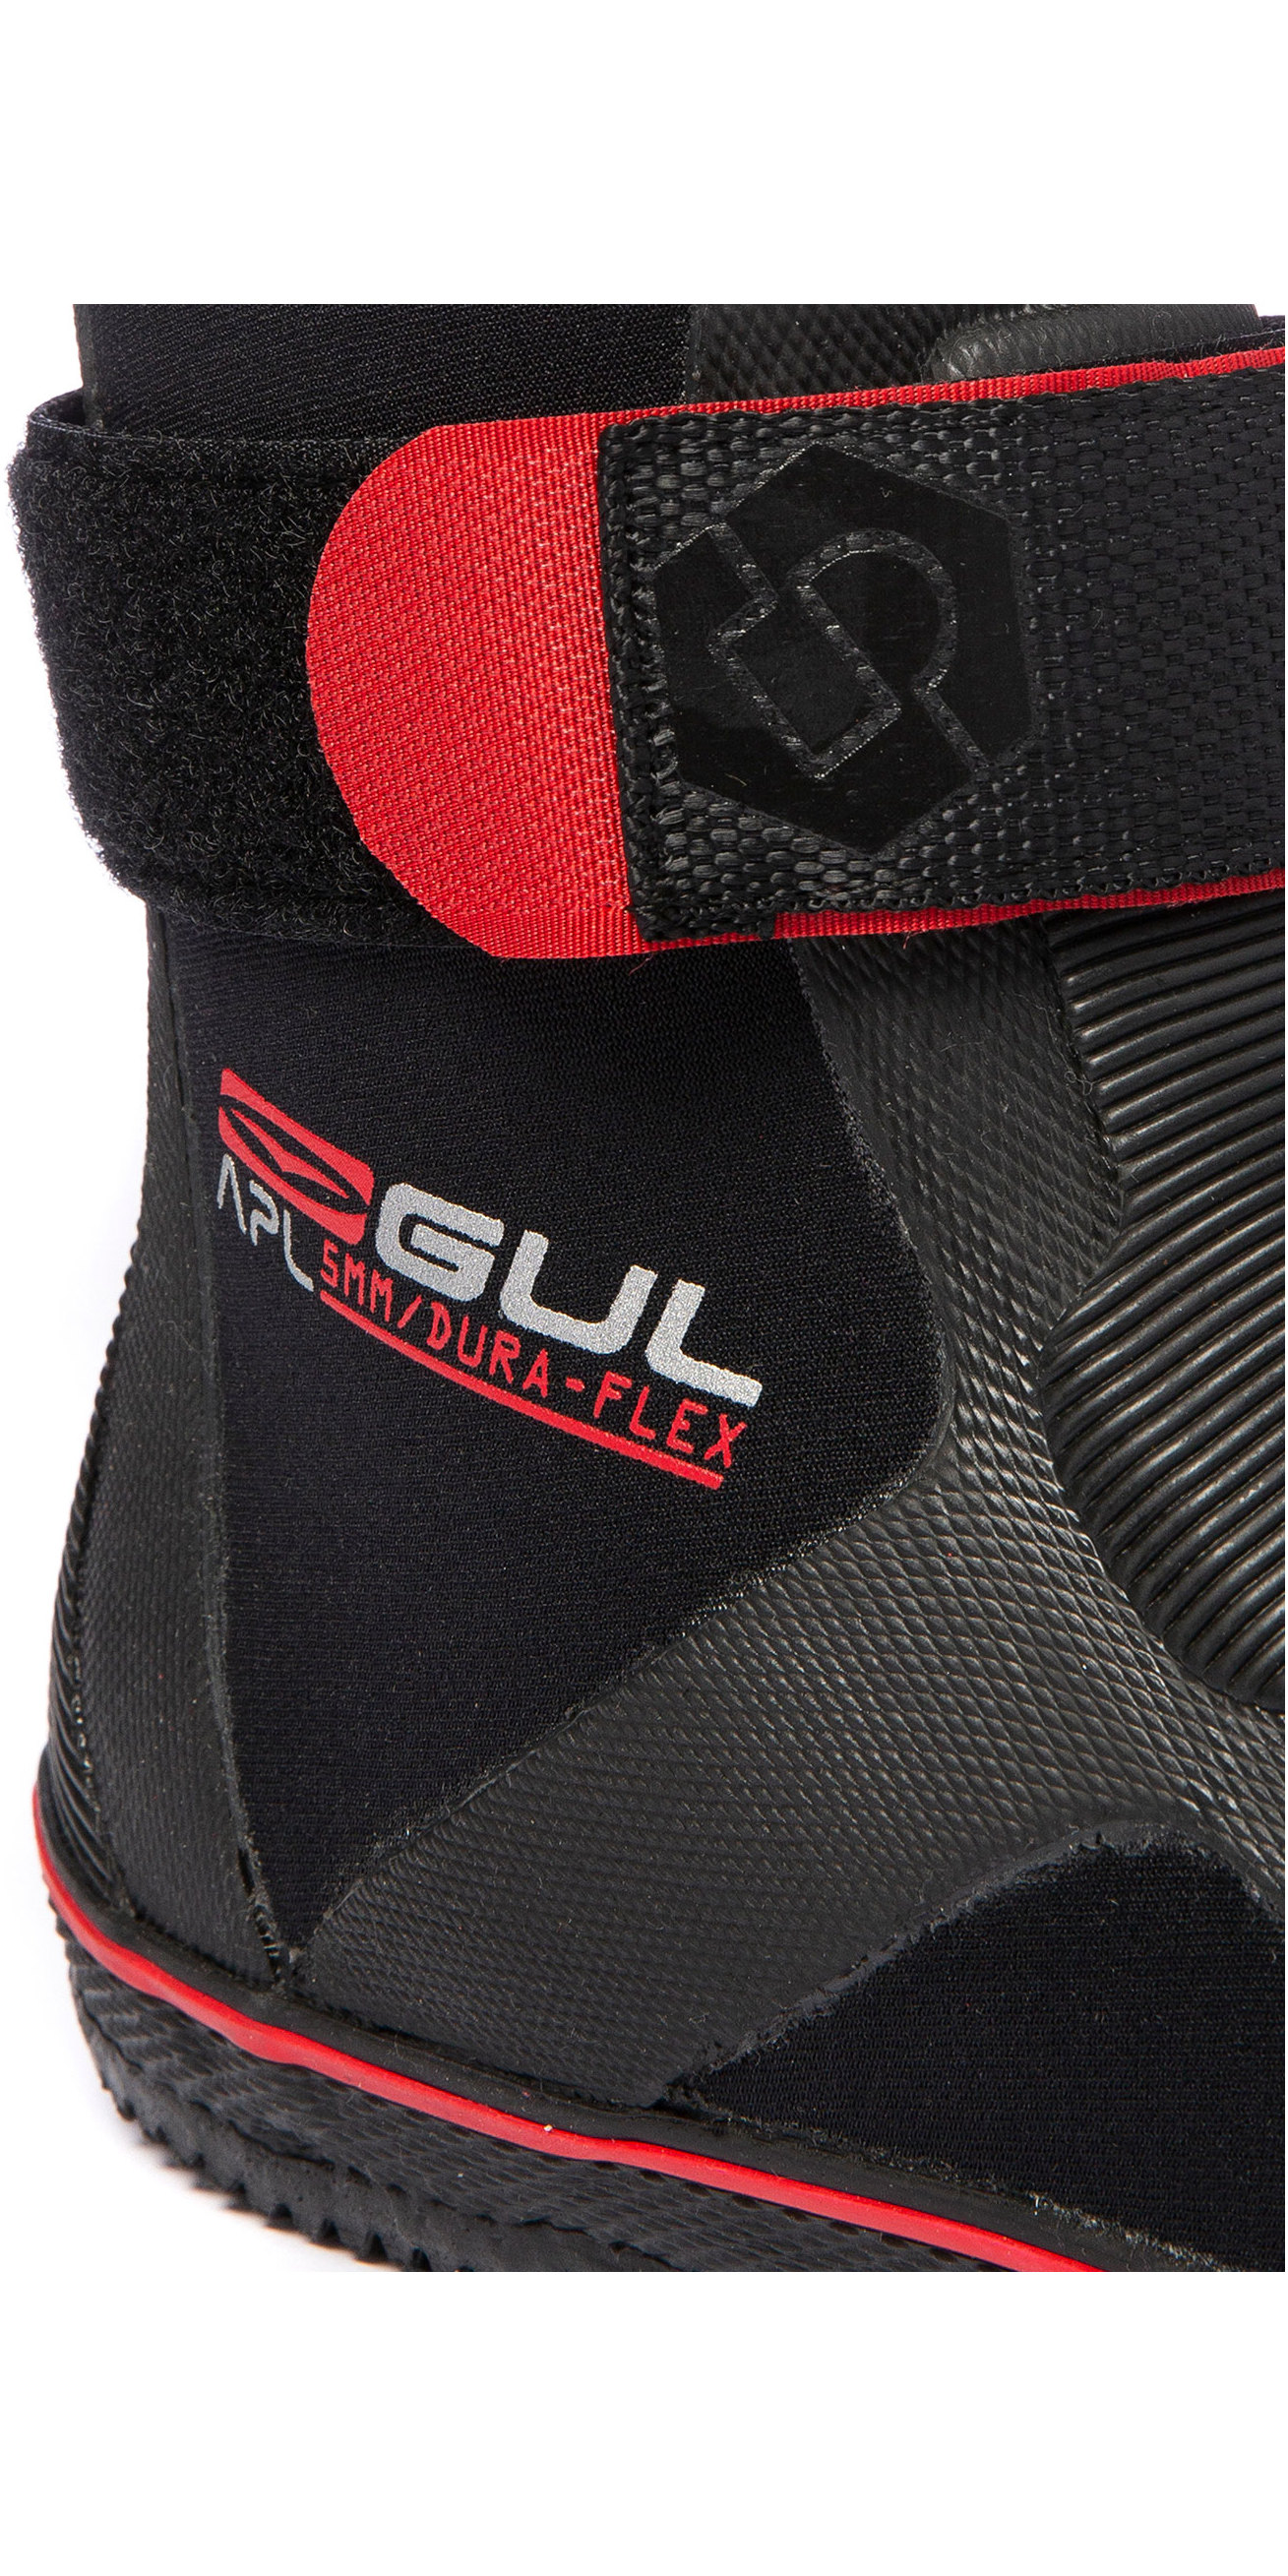 Erwachsene Gul Wassersport 5mm Dura-flex Neoprenanzug Stiefel 